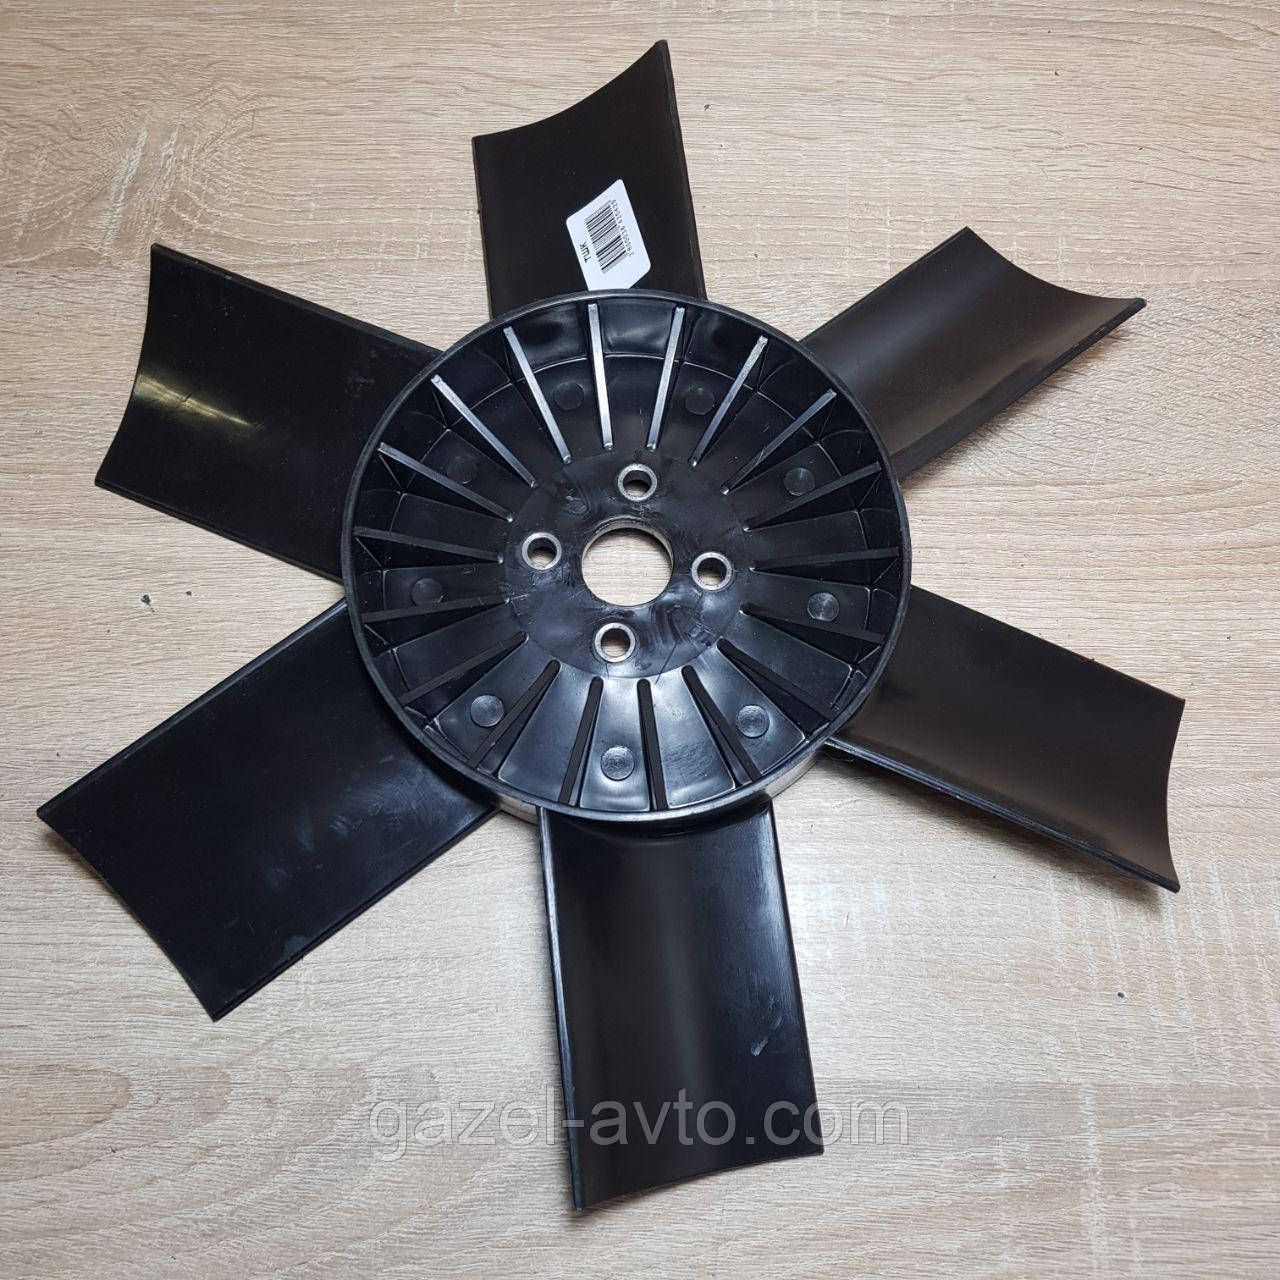 Вентилятор системы охлаждения (крыльчатка) Газель,Соболь 6 лопастная черная (+30% КПД)